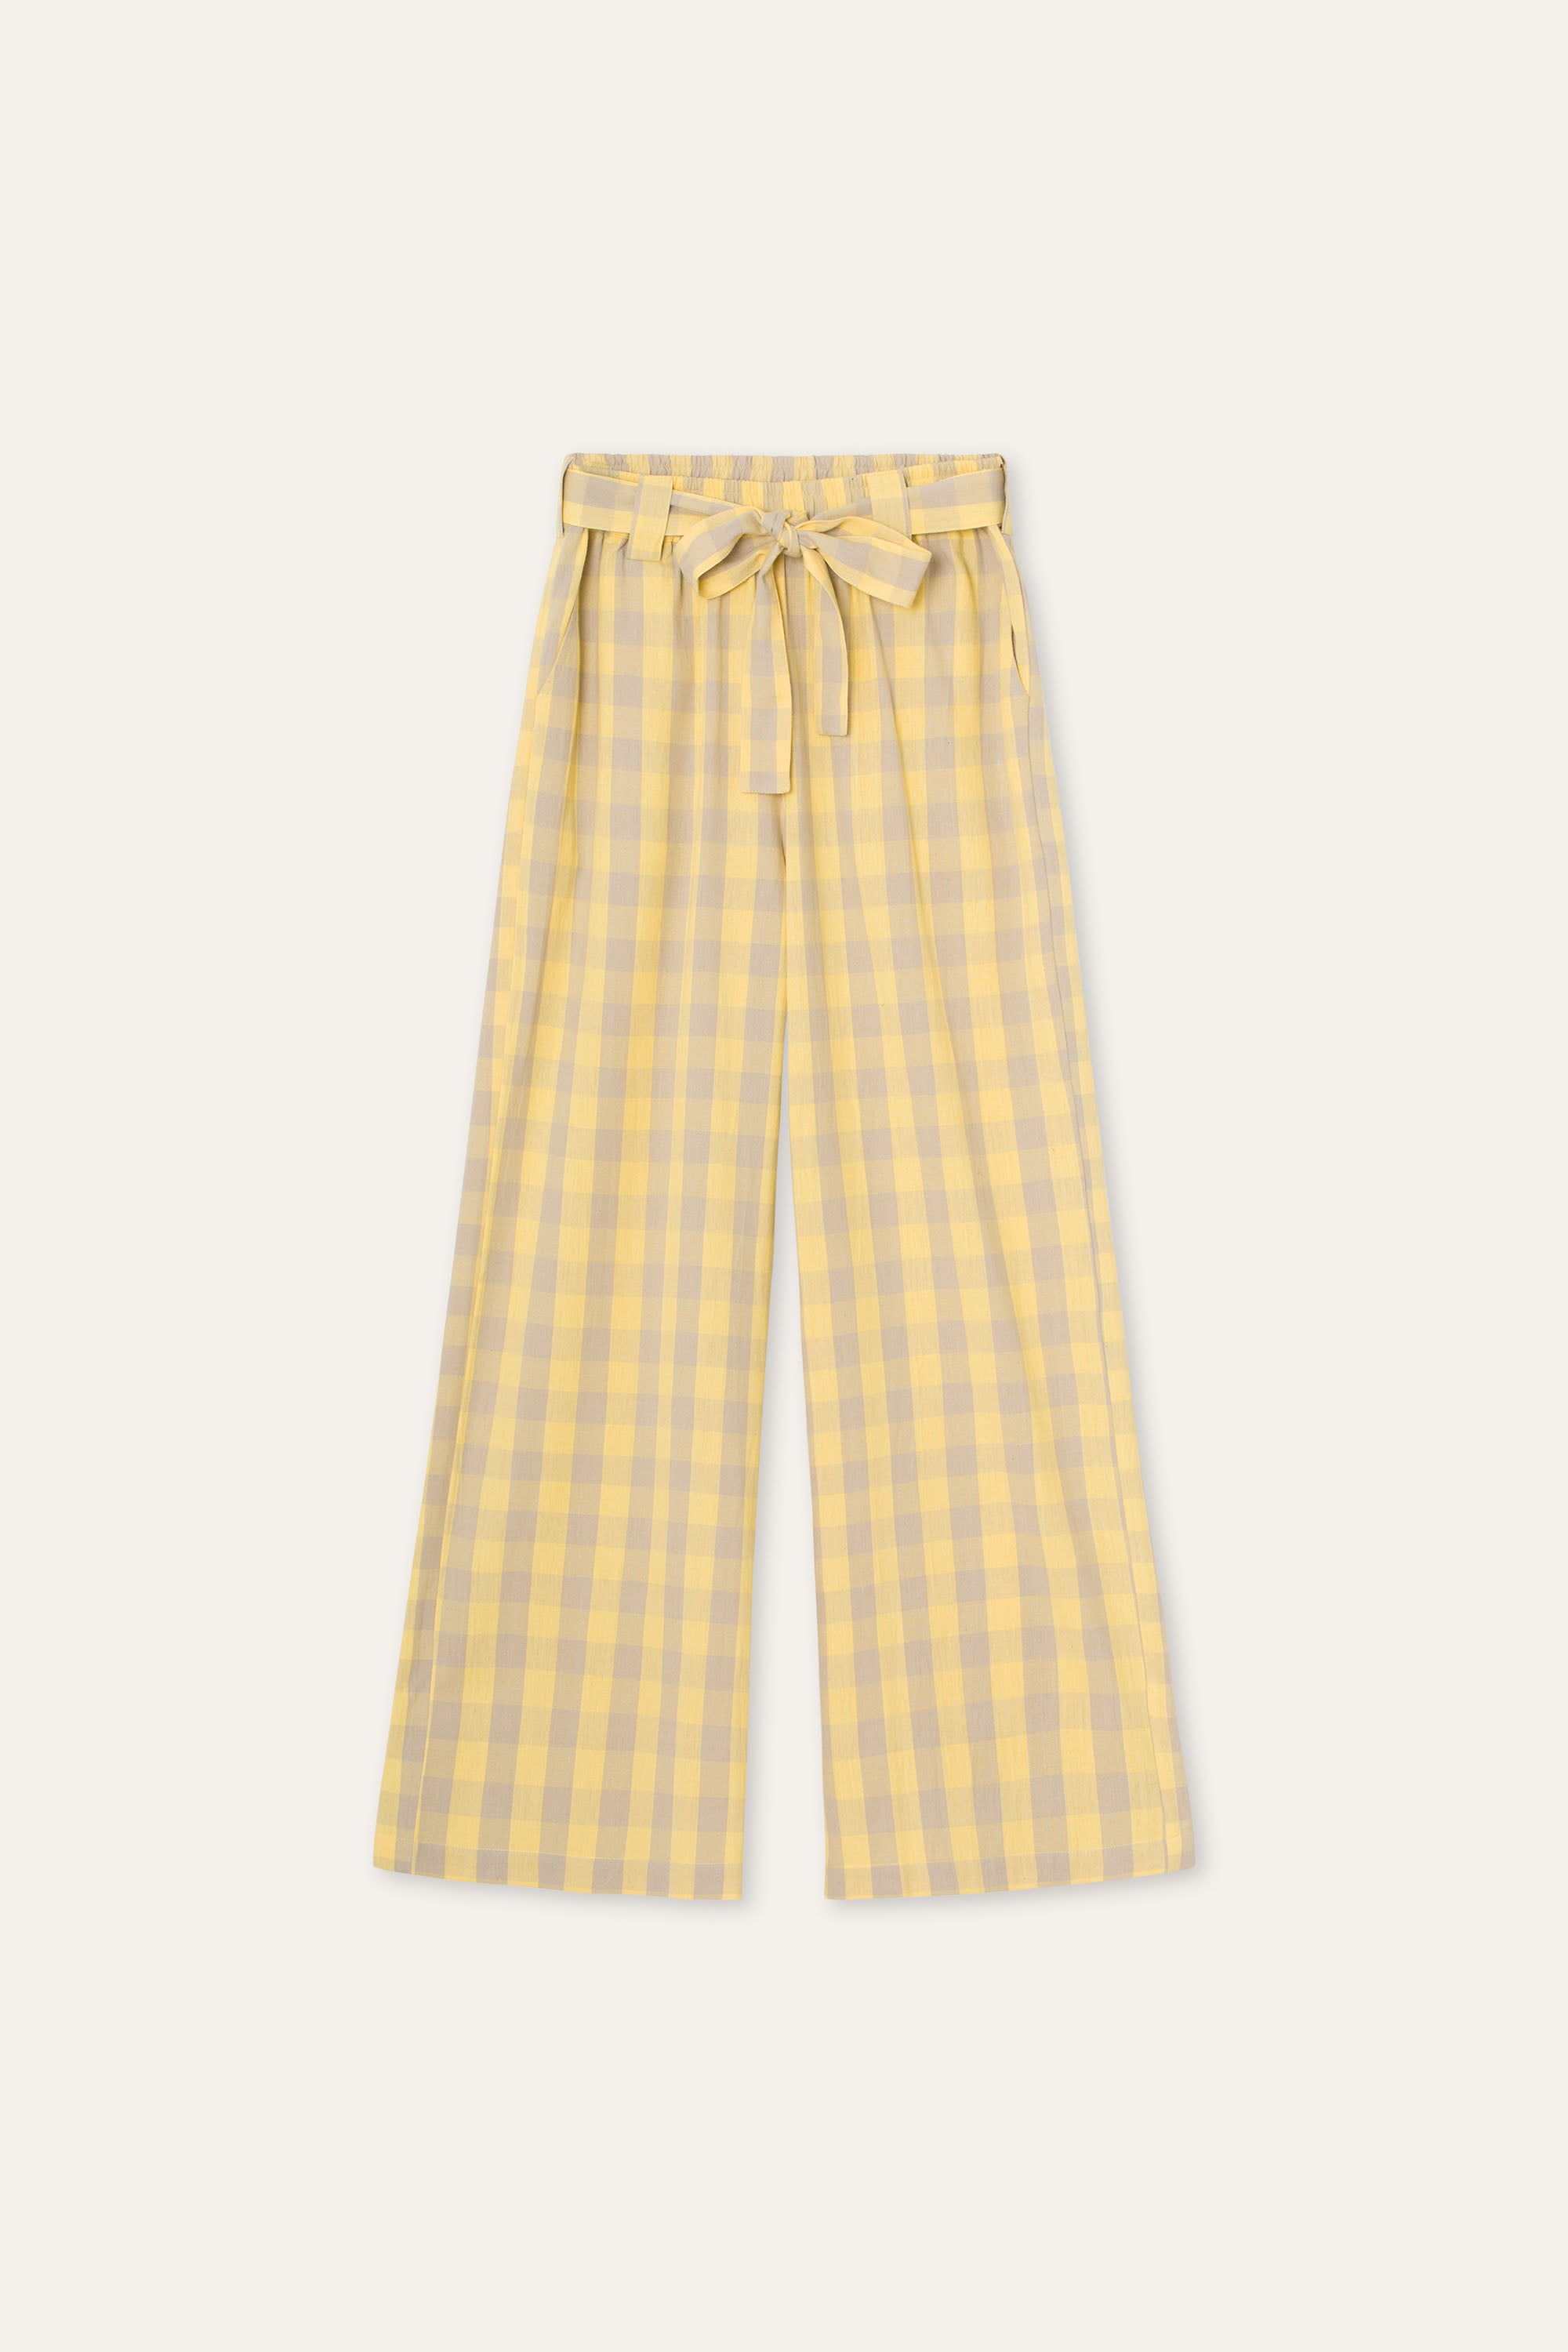 SUMMERY Copenhagen Nanna Pants Trousers 470 Doeskin/Lemon Drop